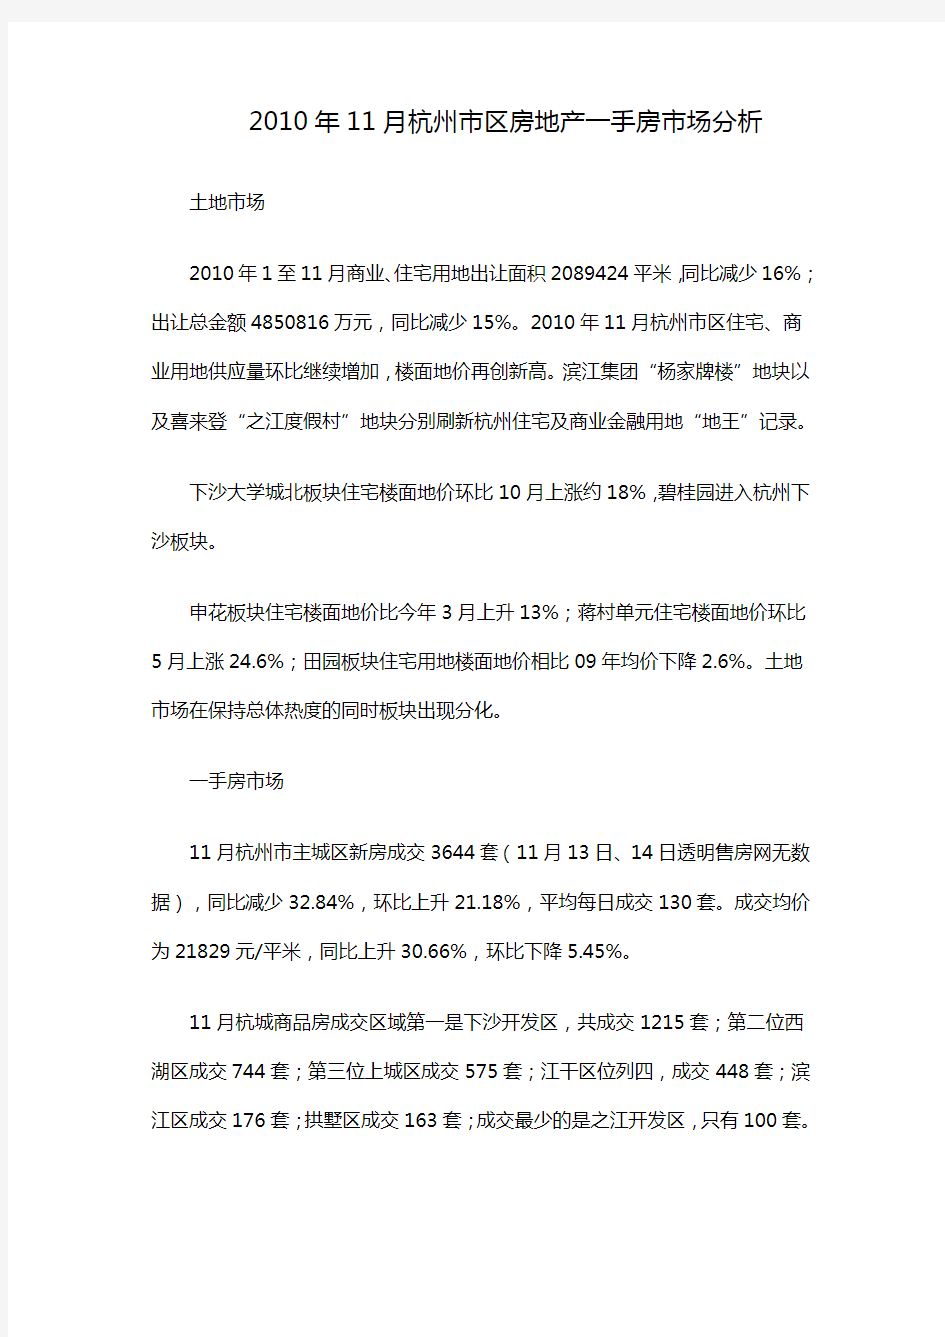 (年度报告)杭州市区房地产市场分析报告